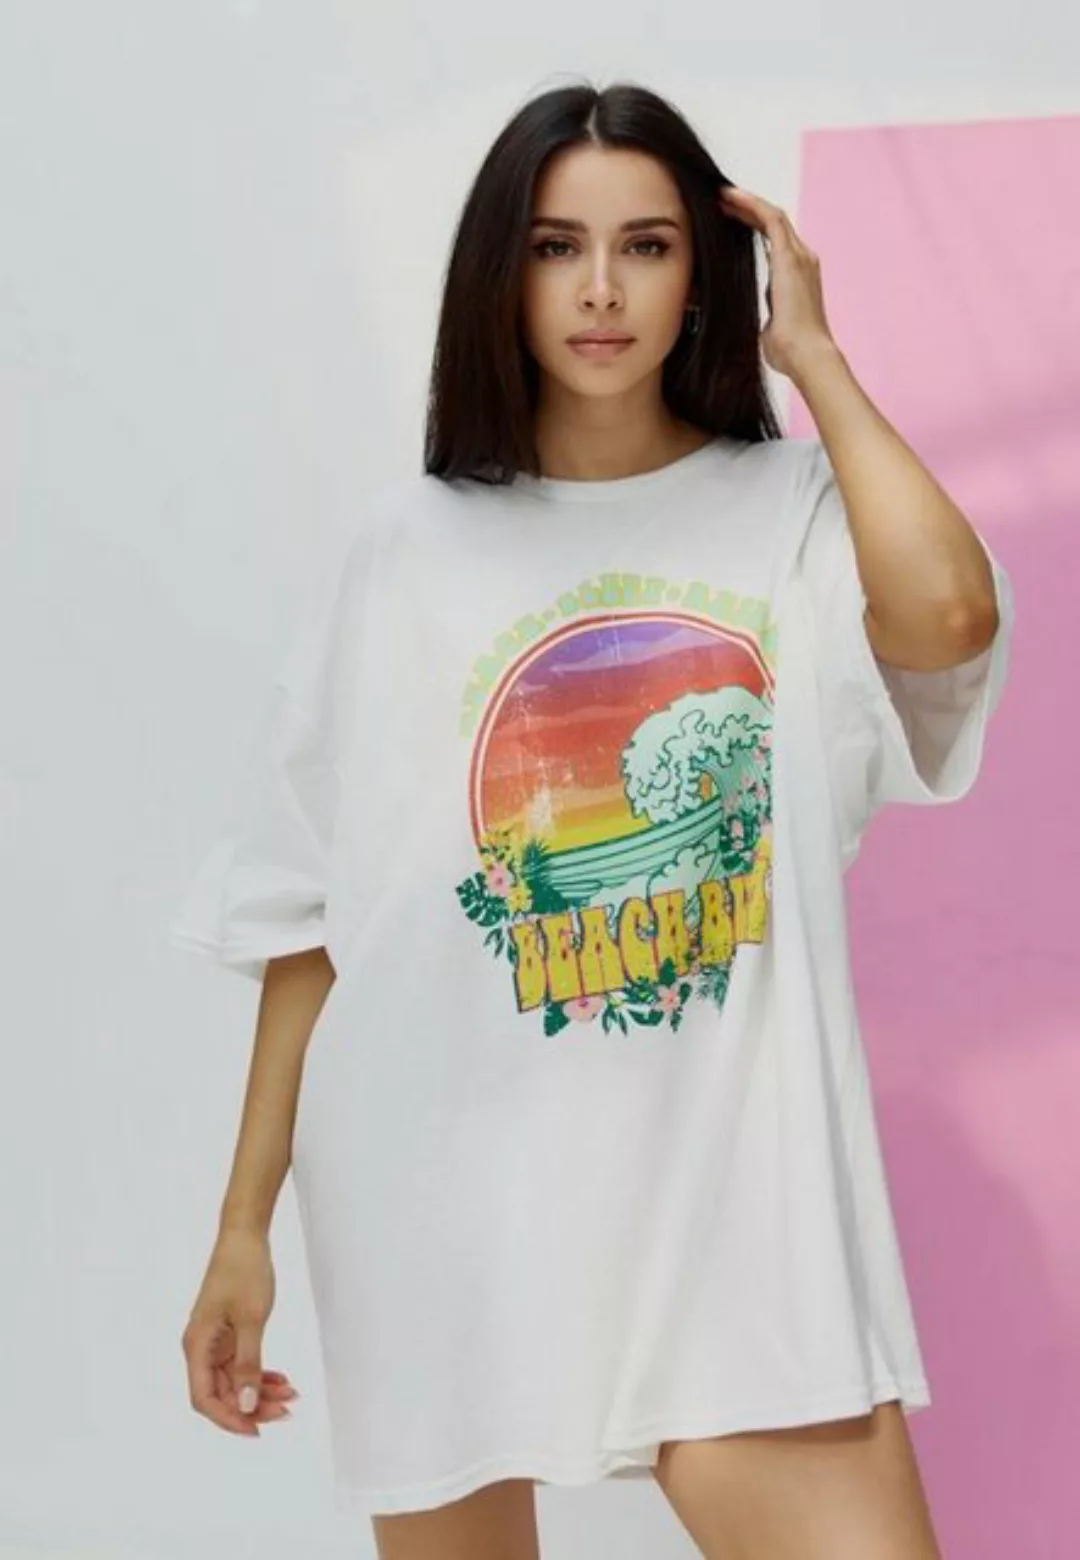 Worldclassca T-Shirt Worldclassca Oversized BEACH BUM Print T-Shirt lang So günstig online kaufen